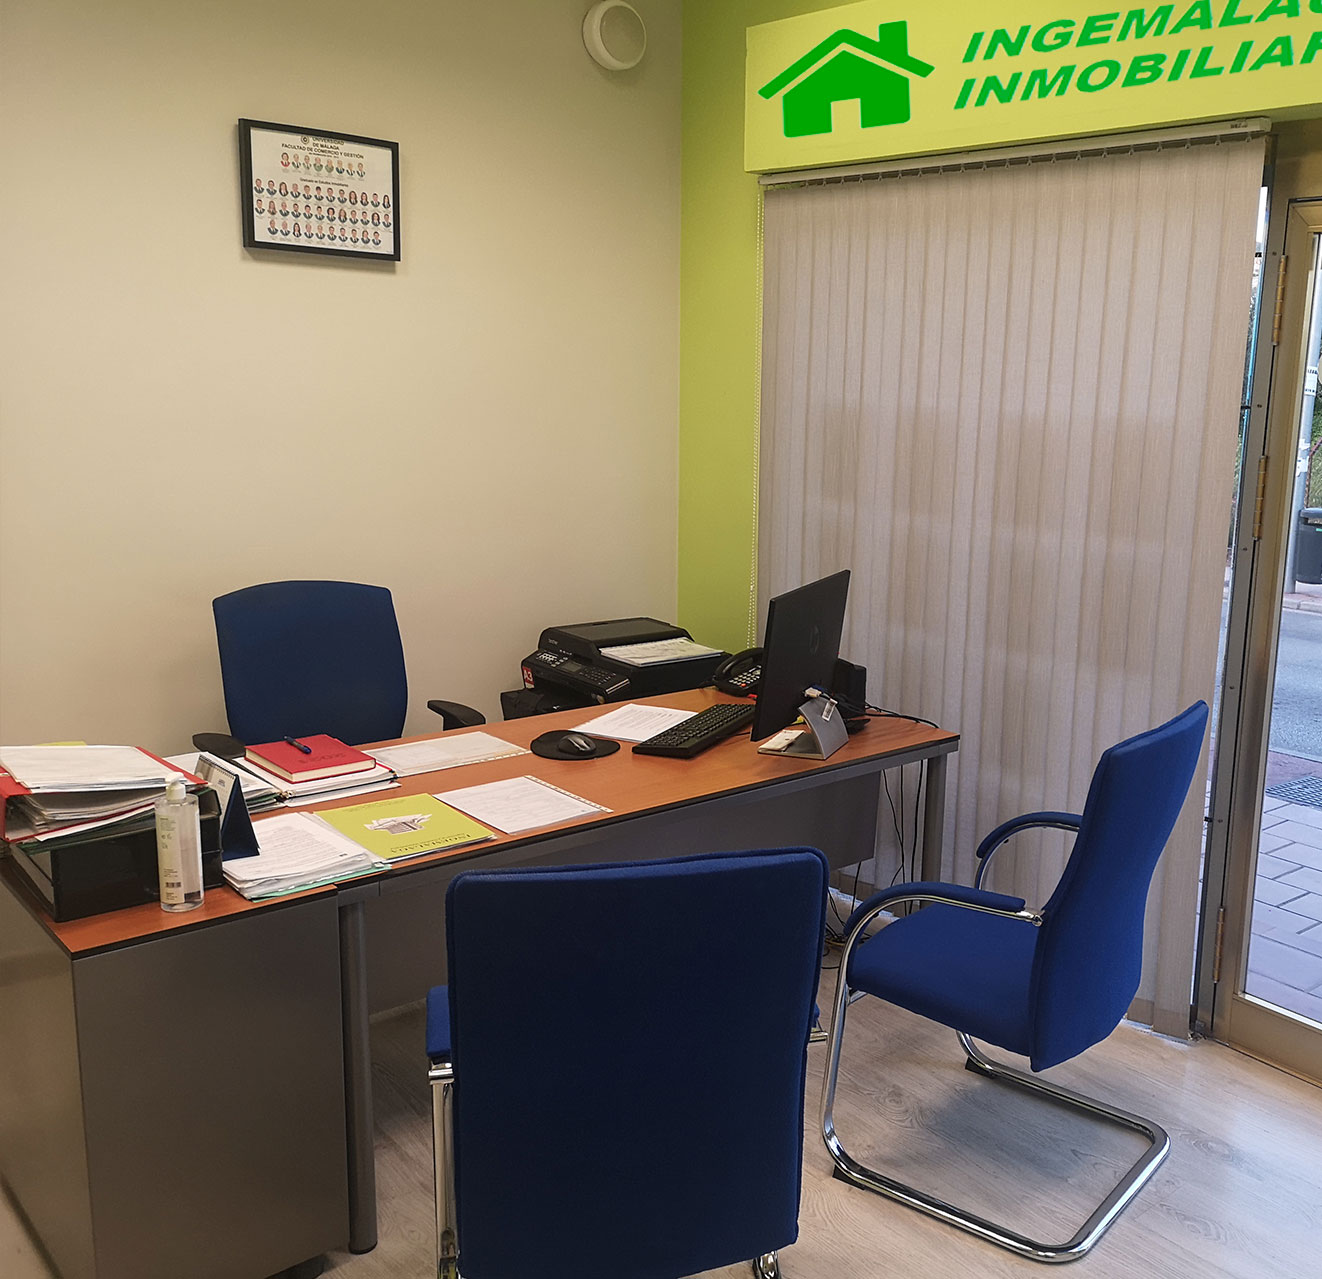 Viviendas en Málaga y alrededores. IngeMálaga le ofrece un servicio profesional en la gestión de inmuebles. Compra, venta y alquiler de inmuebles en Málaga.